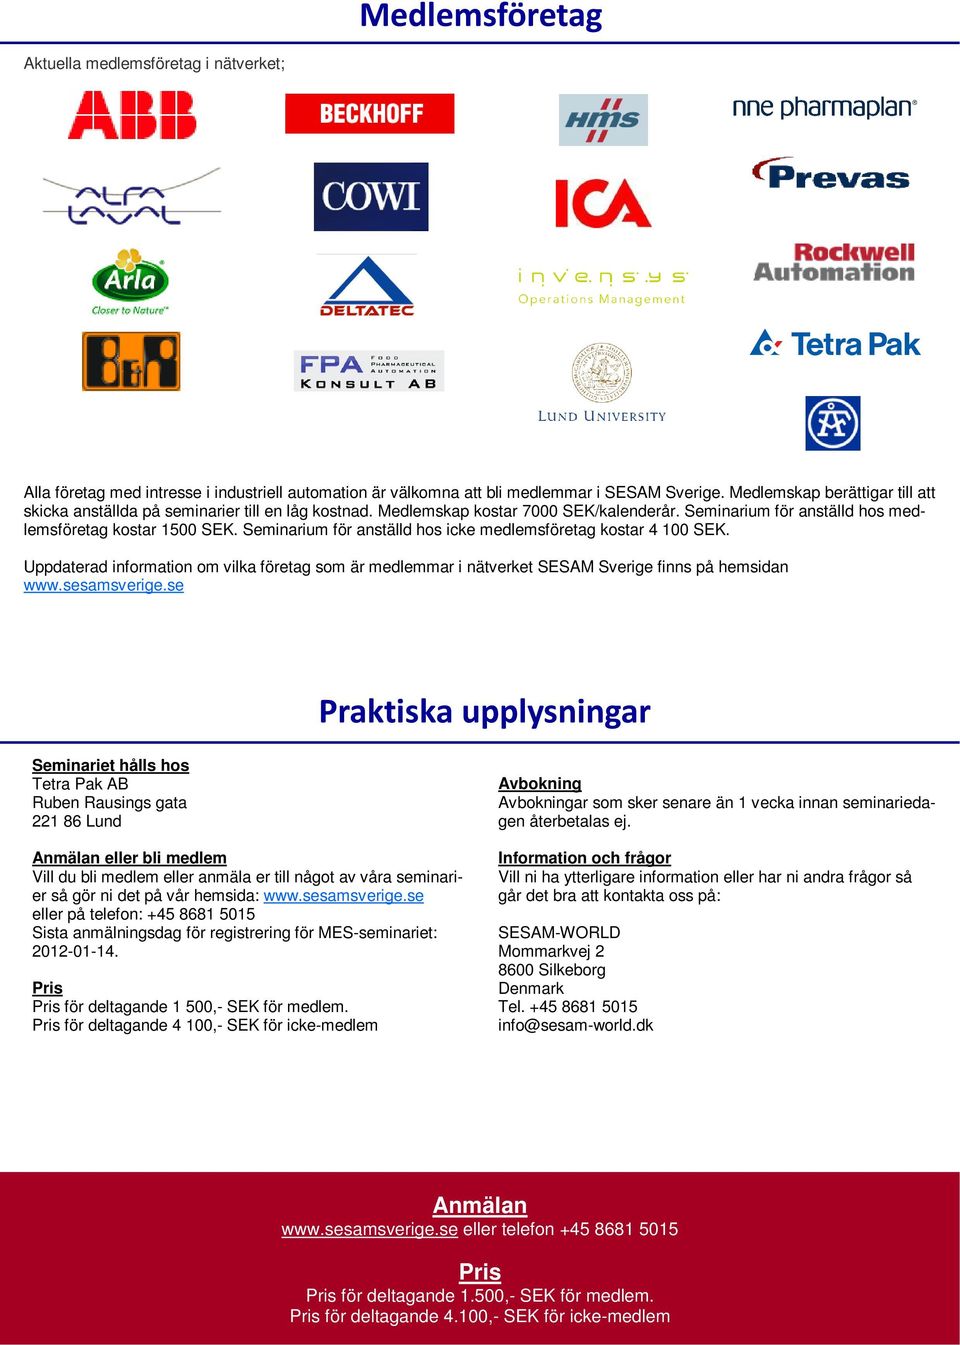 Seminarium för anställd hos icke medlemsföretag kostar 4 100 SEK. Uppdaterad information om vilka företag som är medlemmar i nätverket SESAM Sverige finns på hemsidan www.sesamsverige.